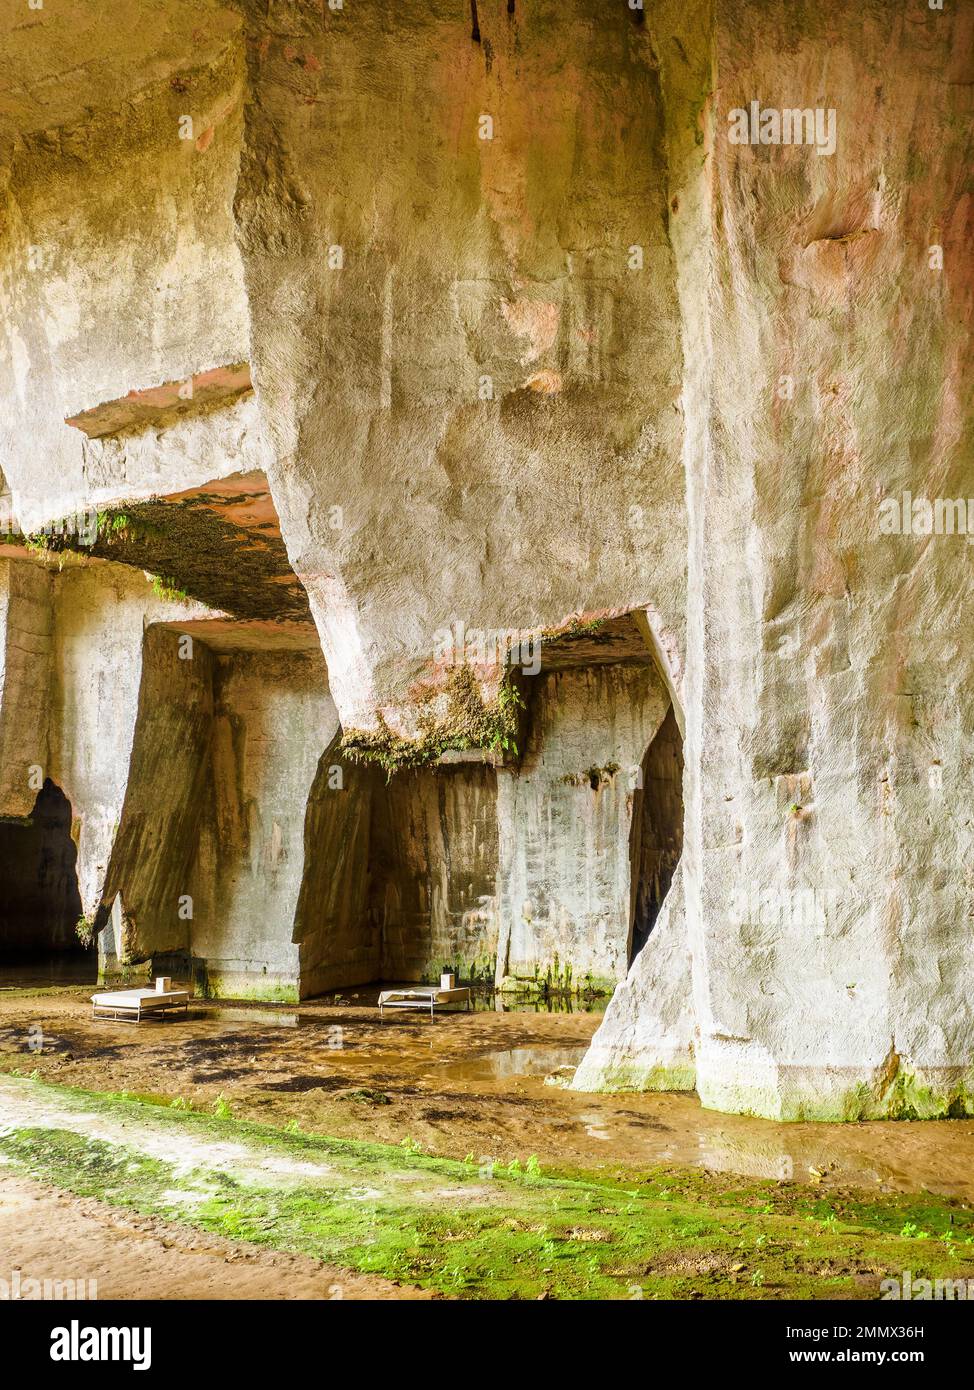 Die Saltnister Höhle - Archäologischer Park Neapolis - Syrakus, Sizilien, Italien der Name leitet sich von den Farben der Wände ab, ähnlich den Nuancen des Mineralsalpeters. Es ist nicht künstlich, da es nach einem Zusammenbruch in der Latomie natürlich entstanden ist, deren Felsen sich ablagerten und ihre Formation zum Leben brachten. Selbst seine Mauern wurden für die Gewinnung des Syrakus-Steins verwendet, mit dem die Siceliot-Stadt gebaut wurde. Stockfoto